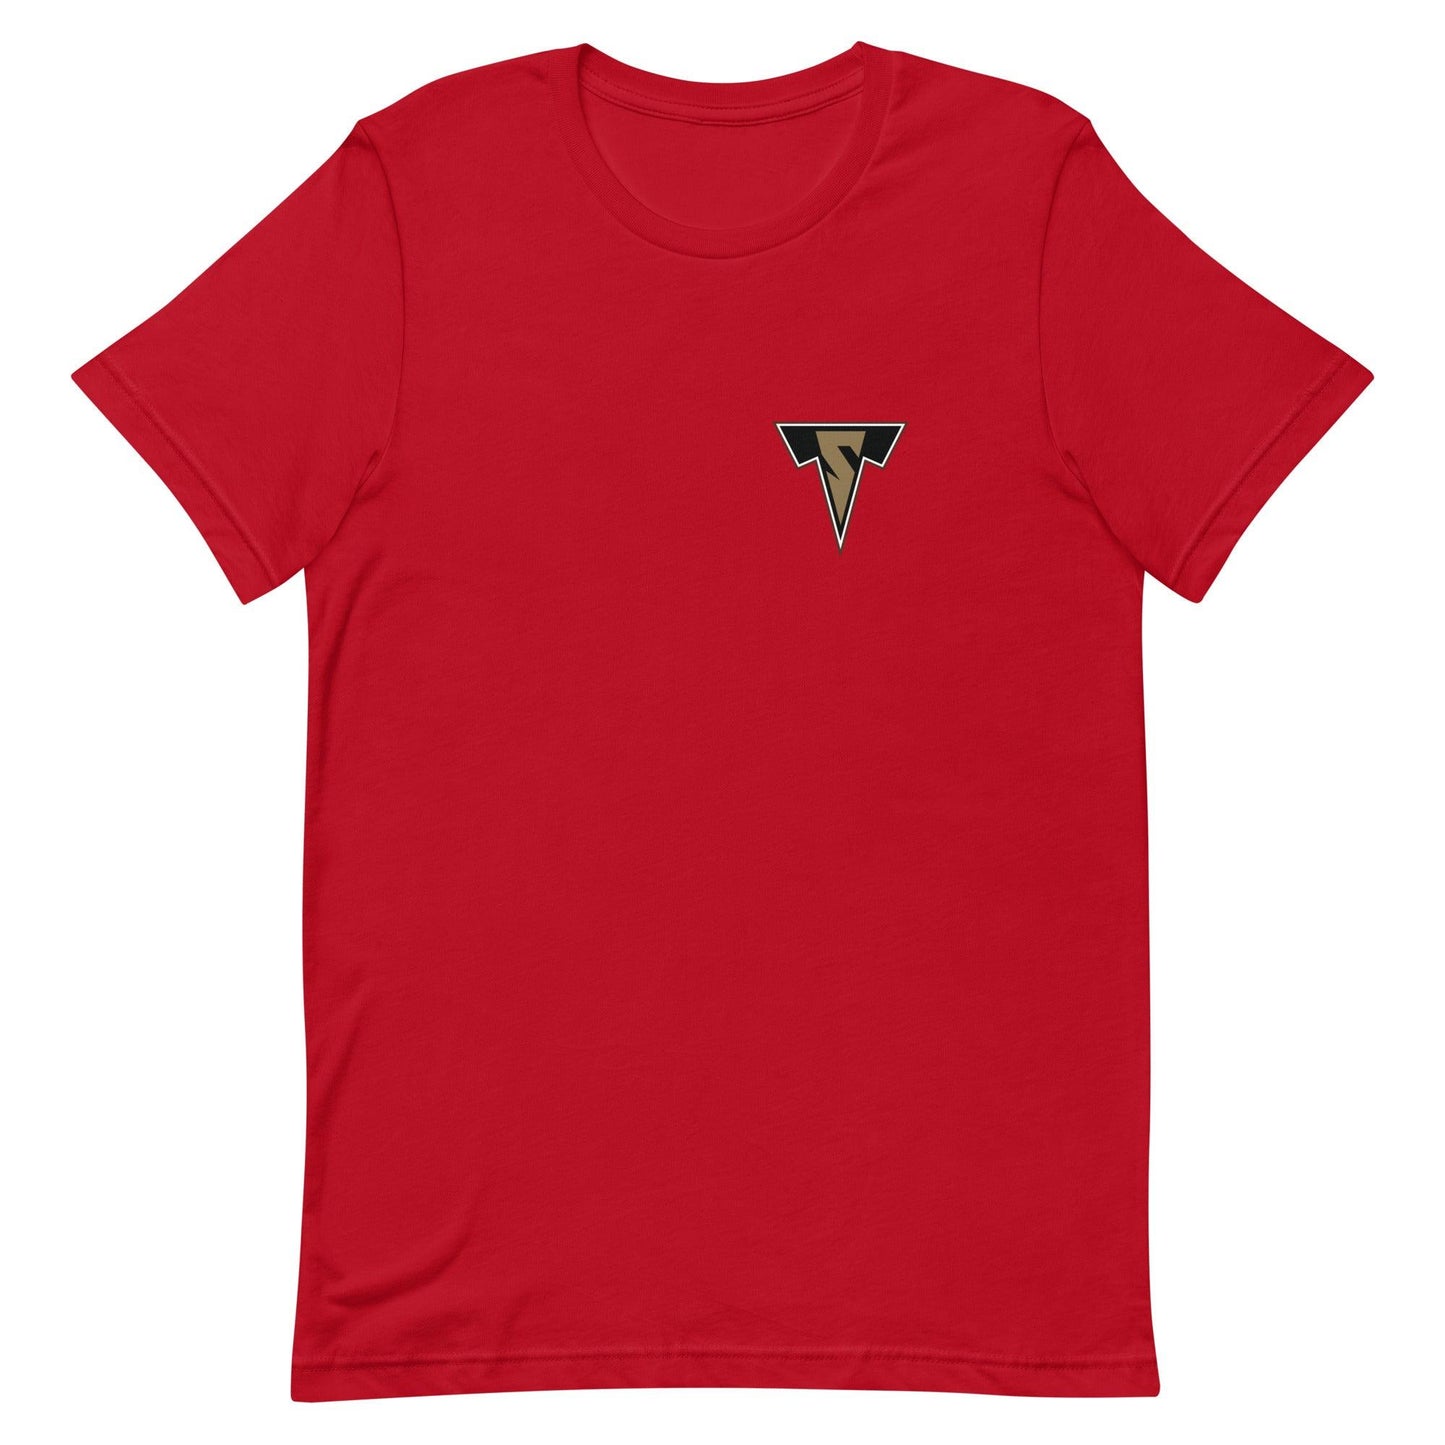 Sean Tyler "Elite" t-shirt - Fan Arch